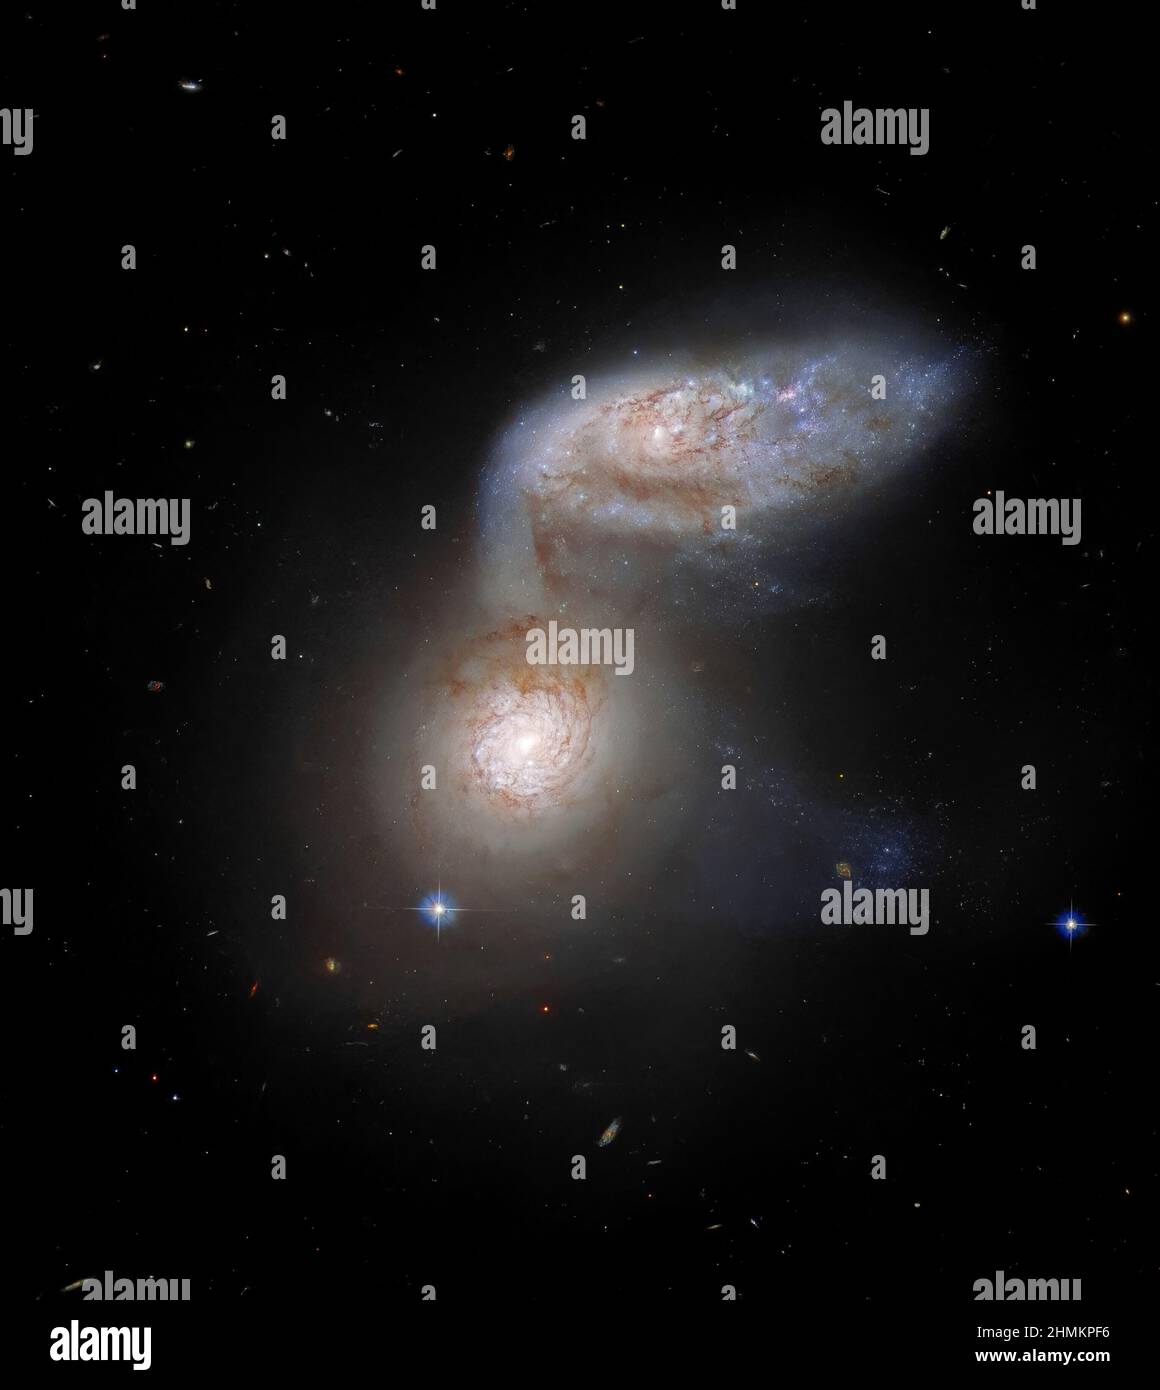 Spiralgalaxien, die zusammen als Arp 91 bekannt sind, verflechten sich über 100 Millionen Lichtjahre von der Erde. Vom Hubble-Weltraumteleskop aus gesehen Stockfoto